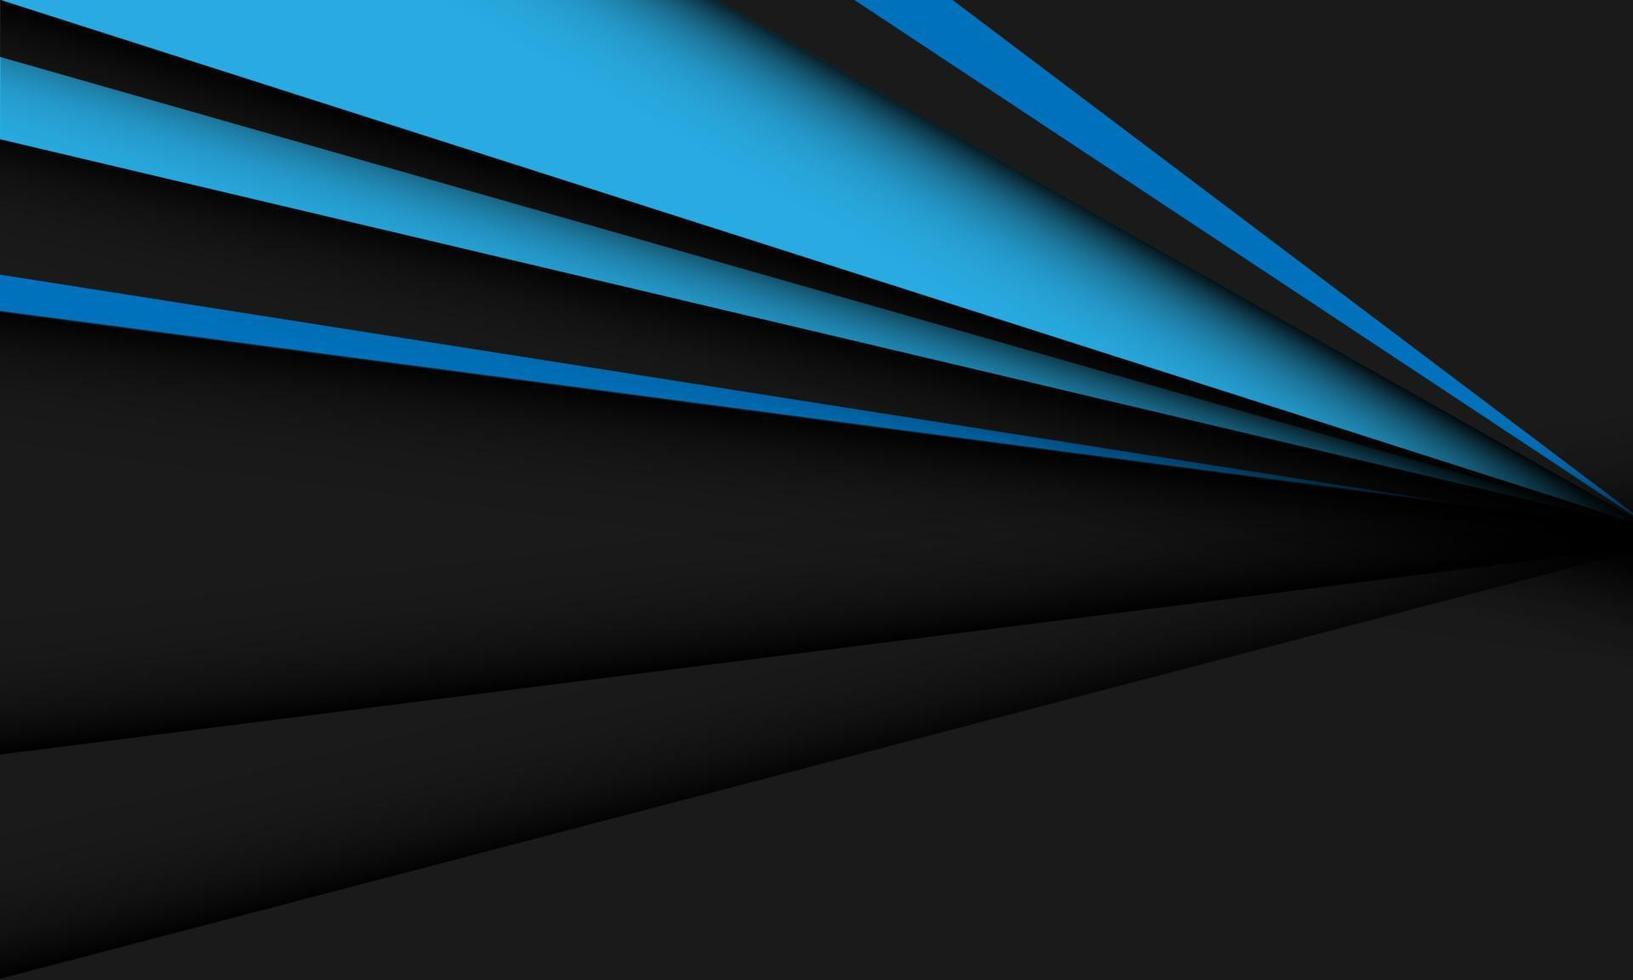 direção de seta triângulo azul abstrato velocidade dinâmica no design de sombra preta cinza moderno vetor de fundo futurista